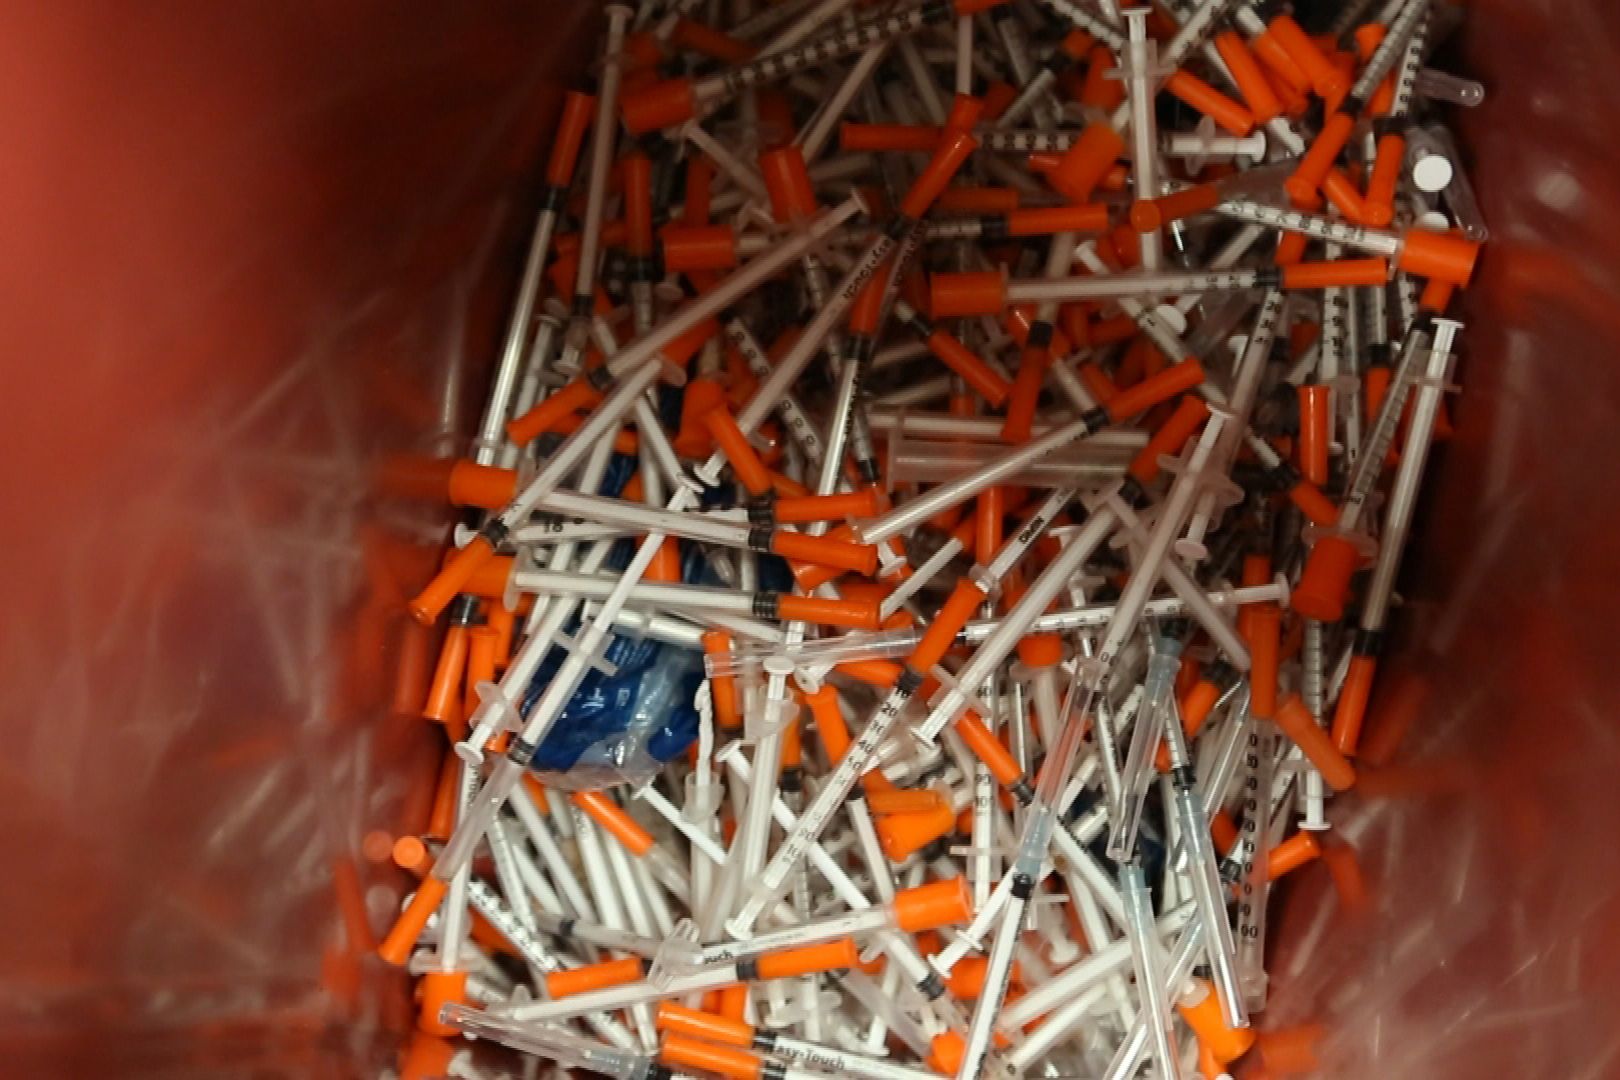 A bin of syringes.